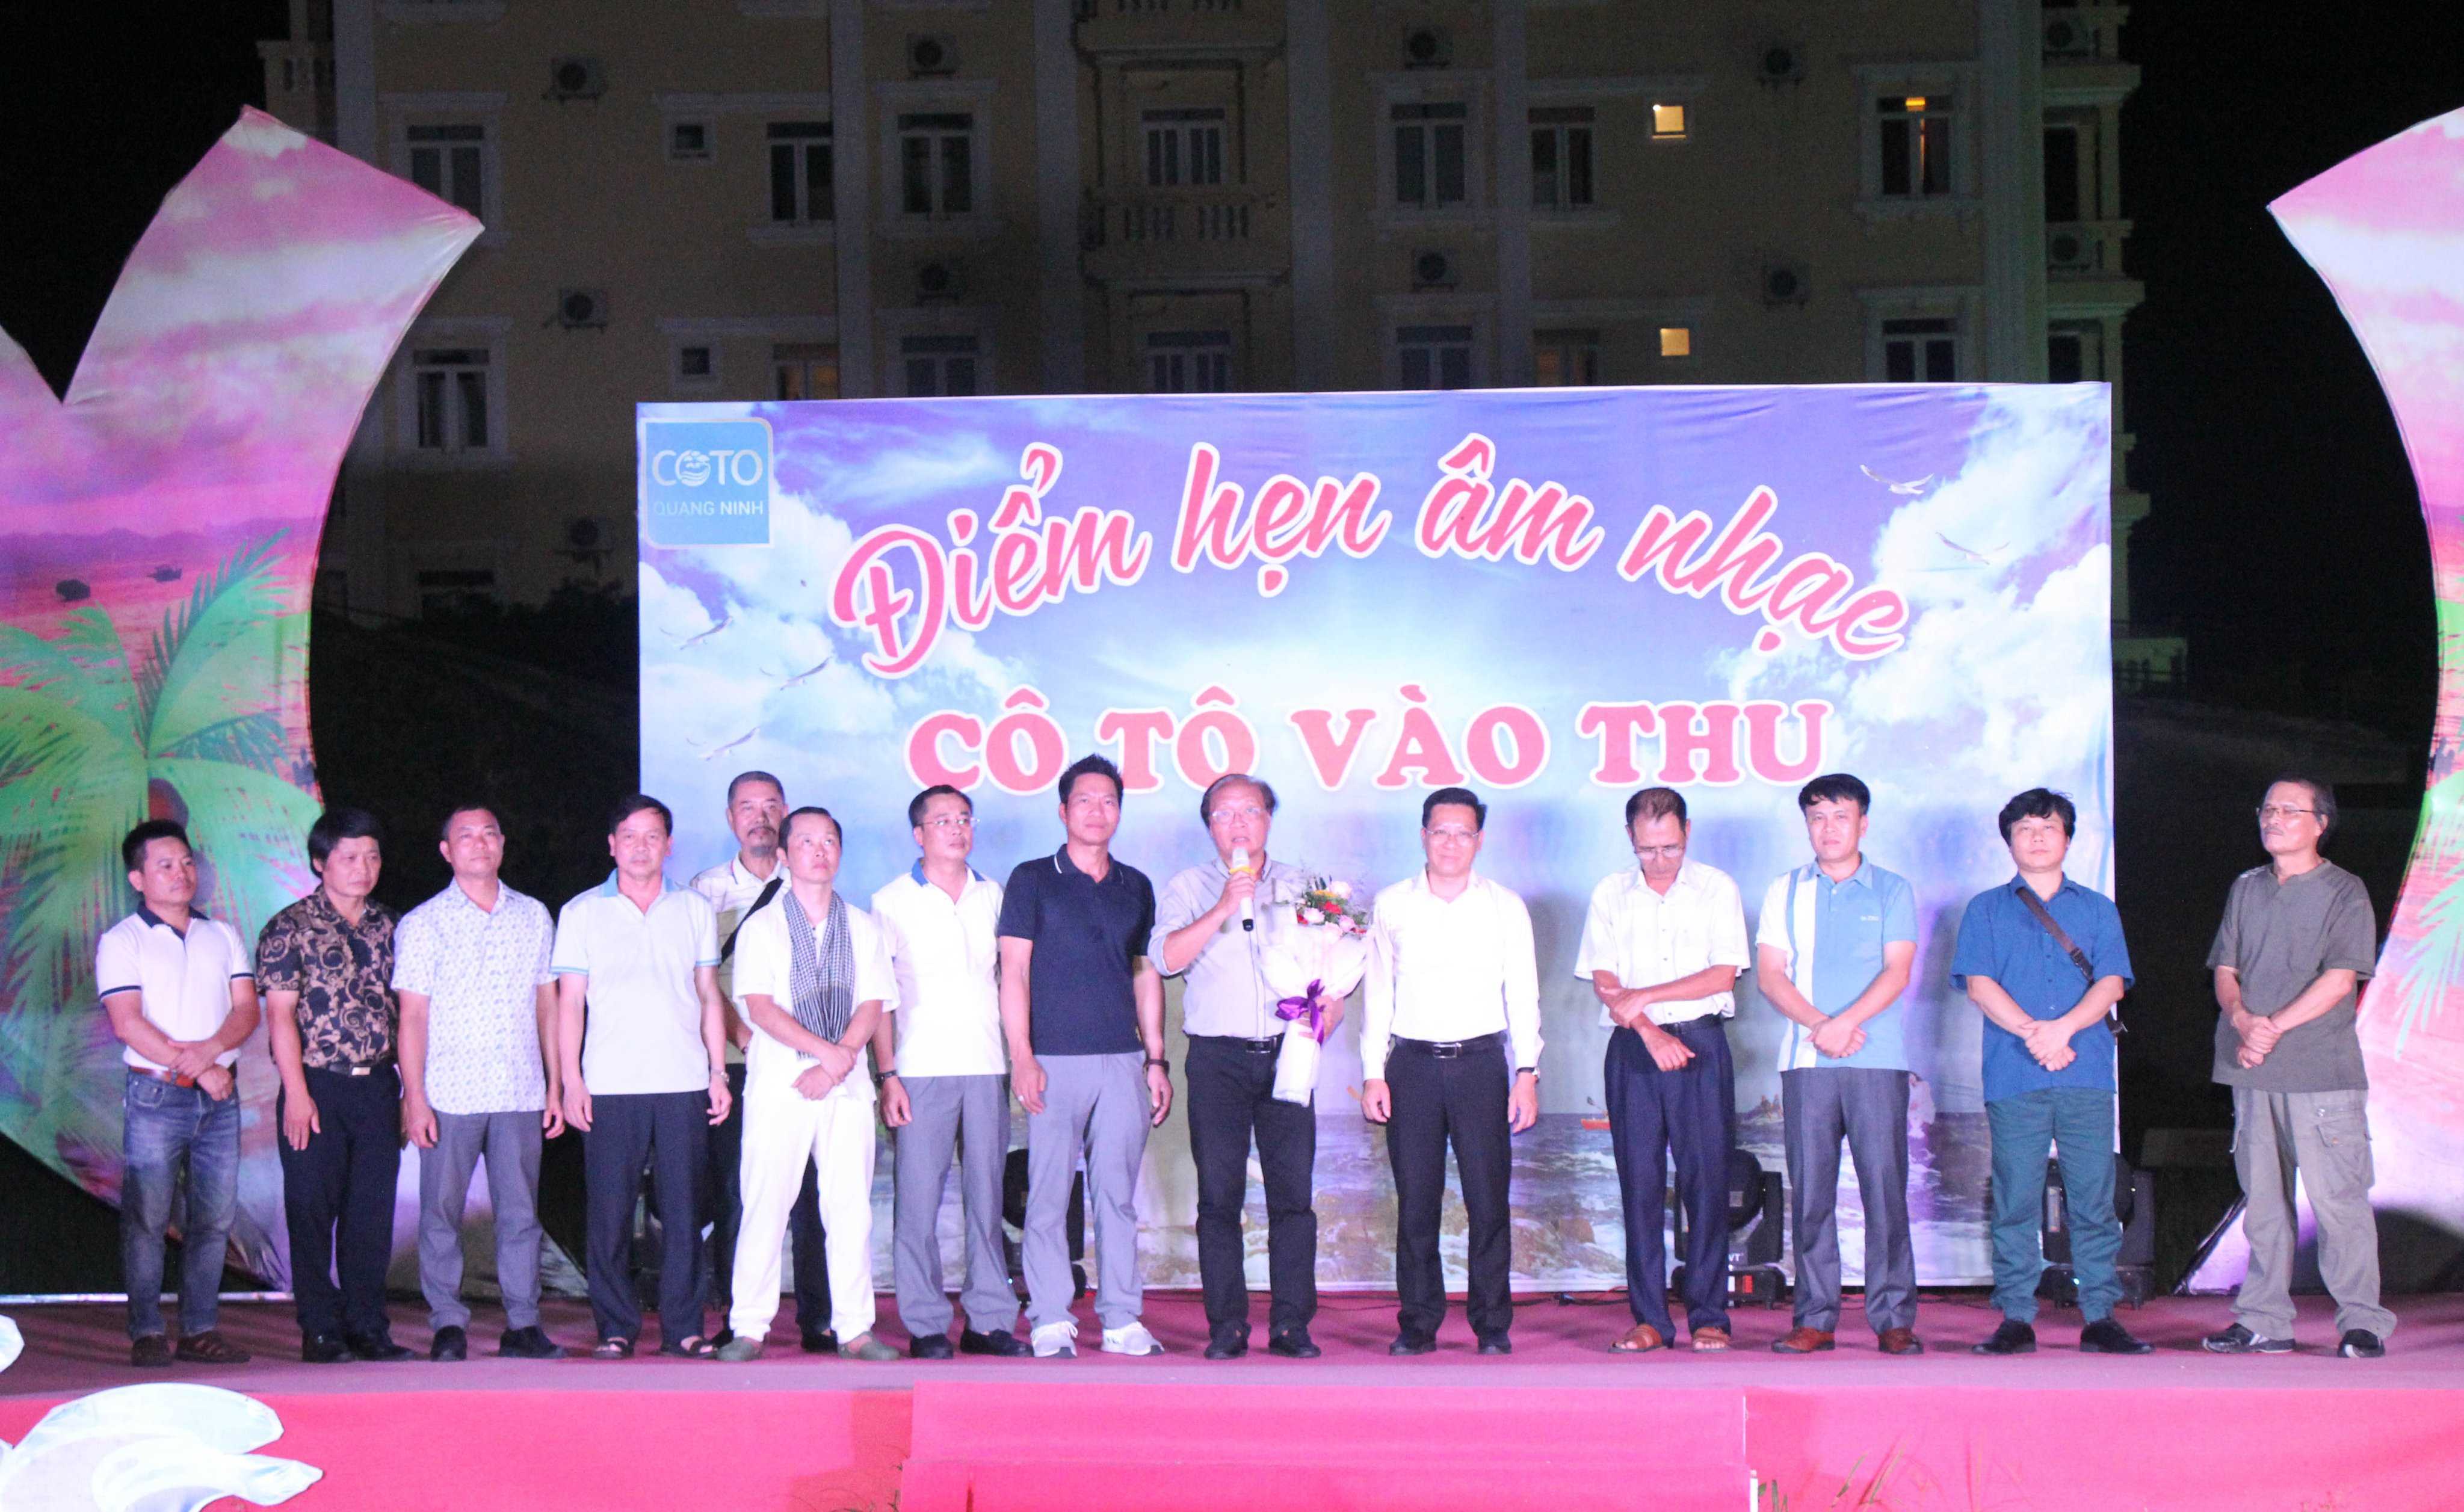 Đoàn các nhạc sĩ Hội Nhạc sĩ Việt Nam giao lưu với du khách và công chúng yêu nhạc Cô Tô.